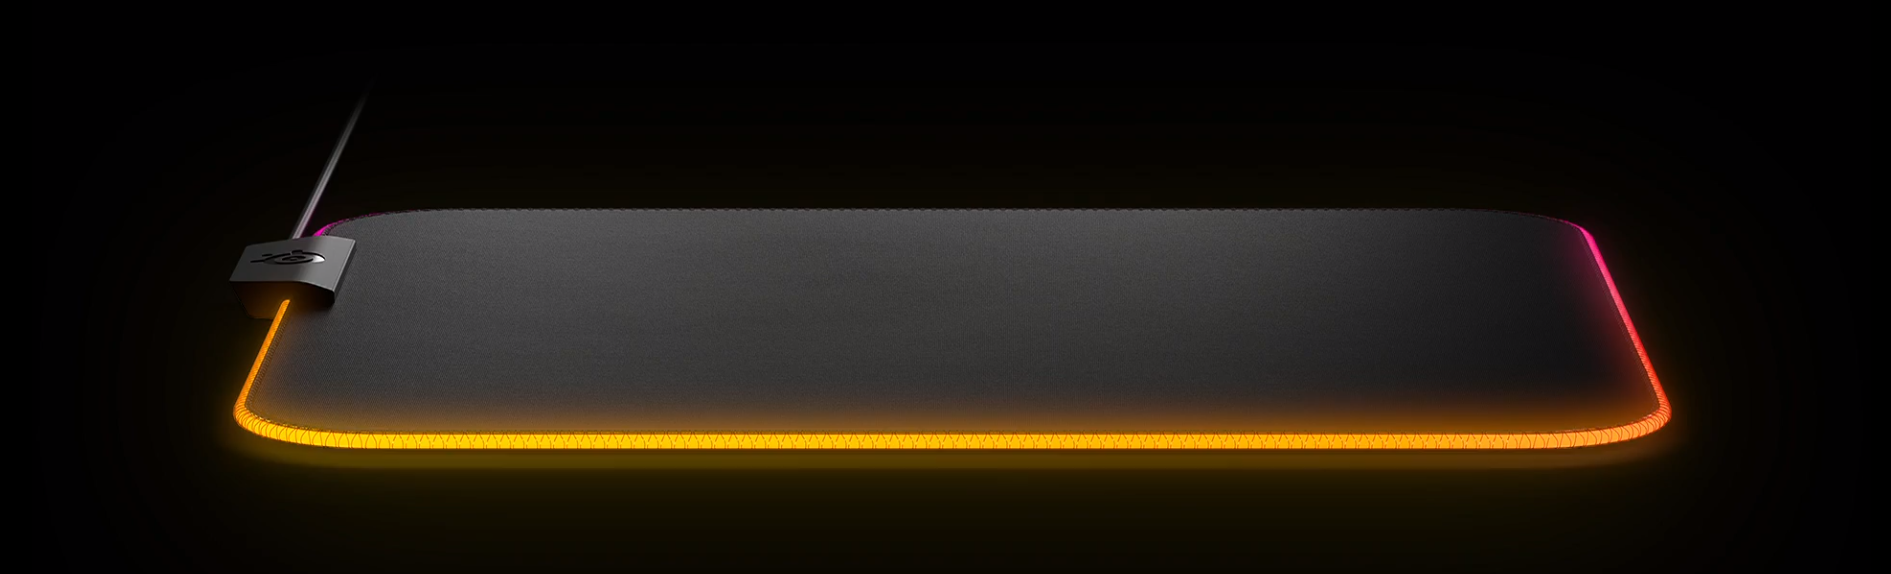 Bàn di chuột SteelSeries QcK Prism Cloth 3XL - 63511 (1220 x 590 x 4 mm) tích hợp led RGB nhiều hiệu ứng